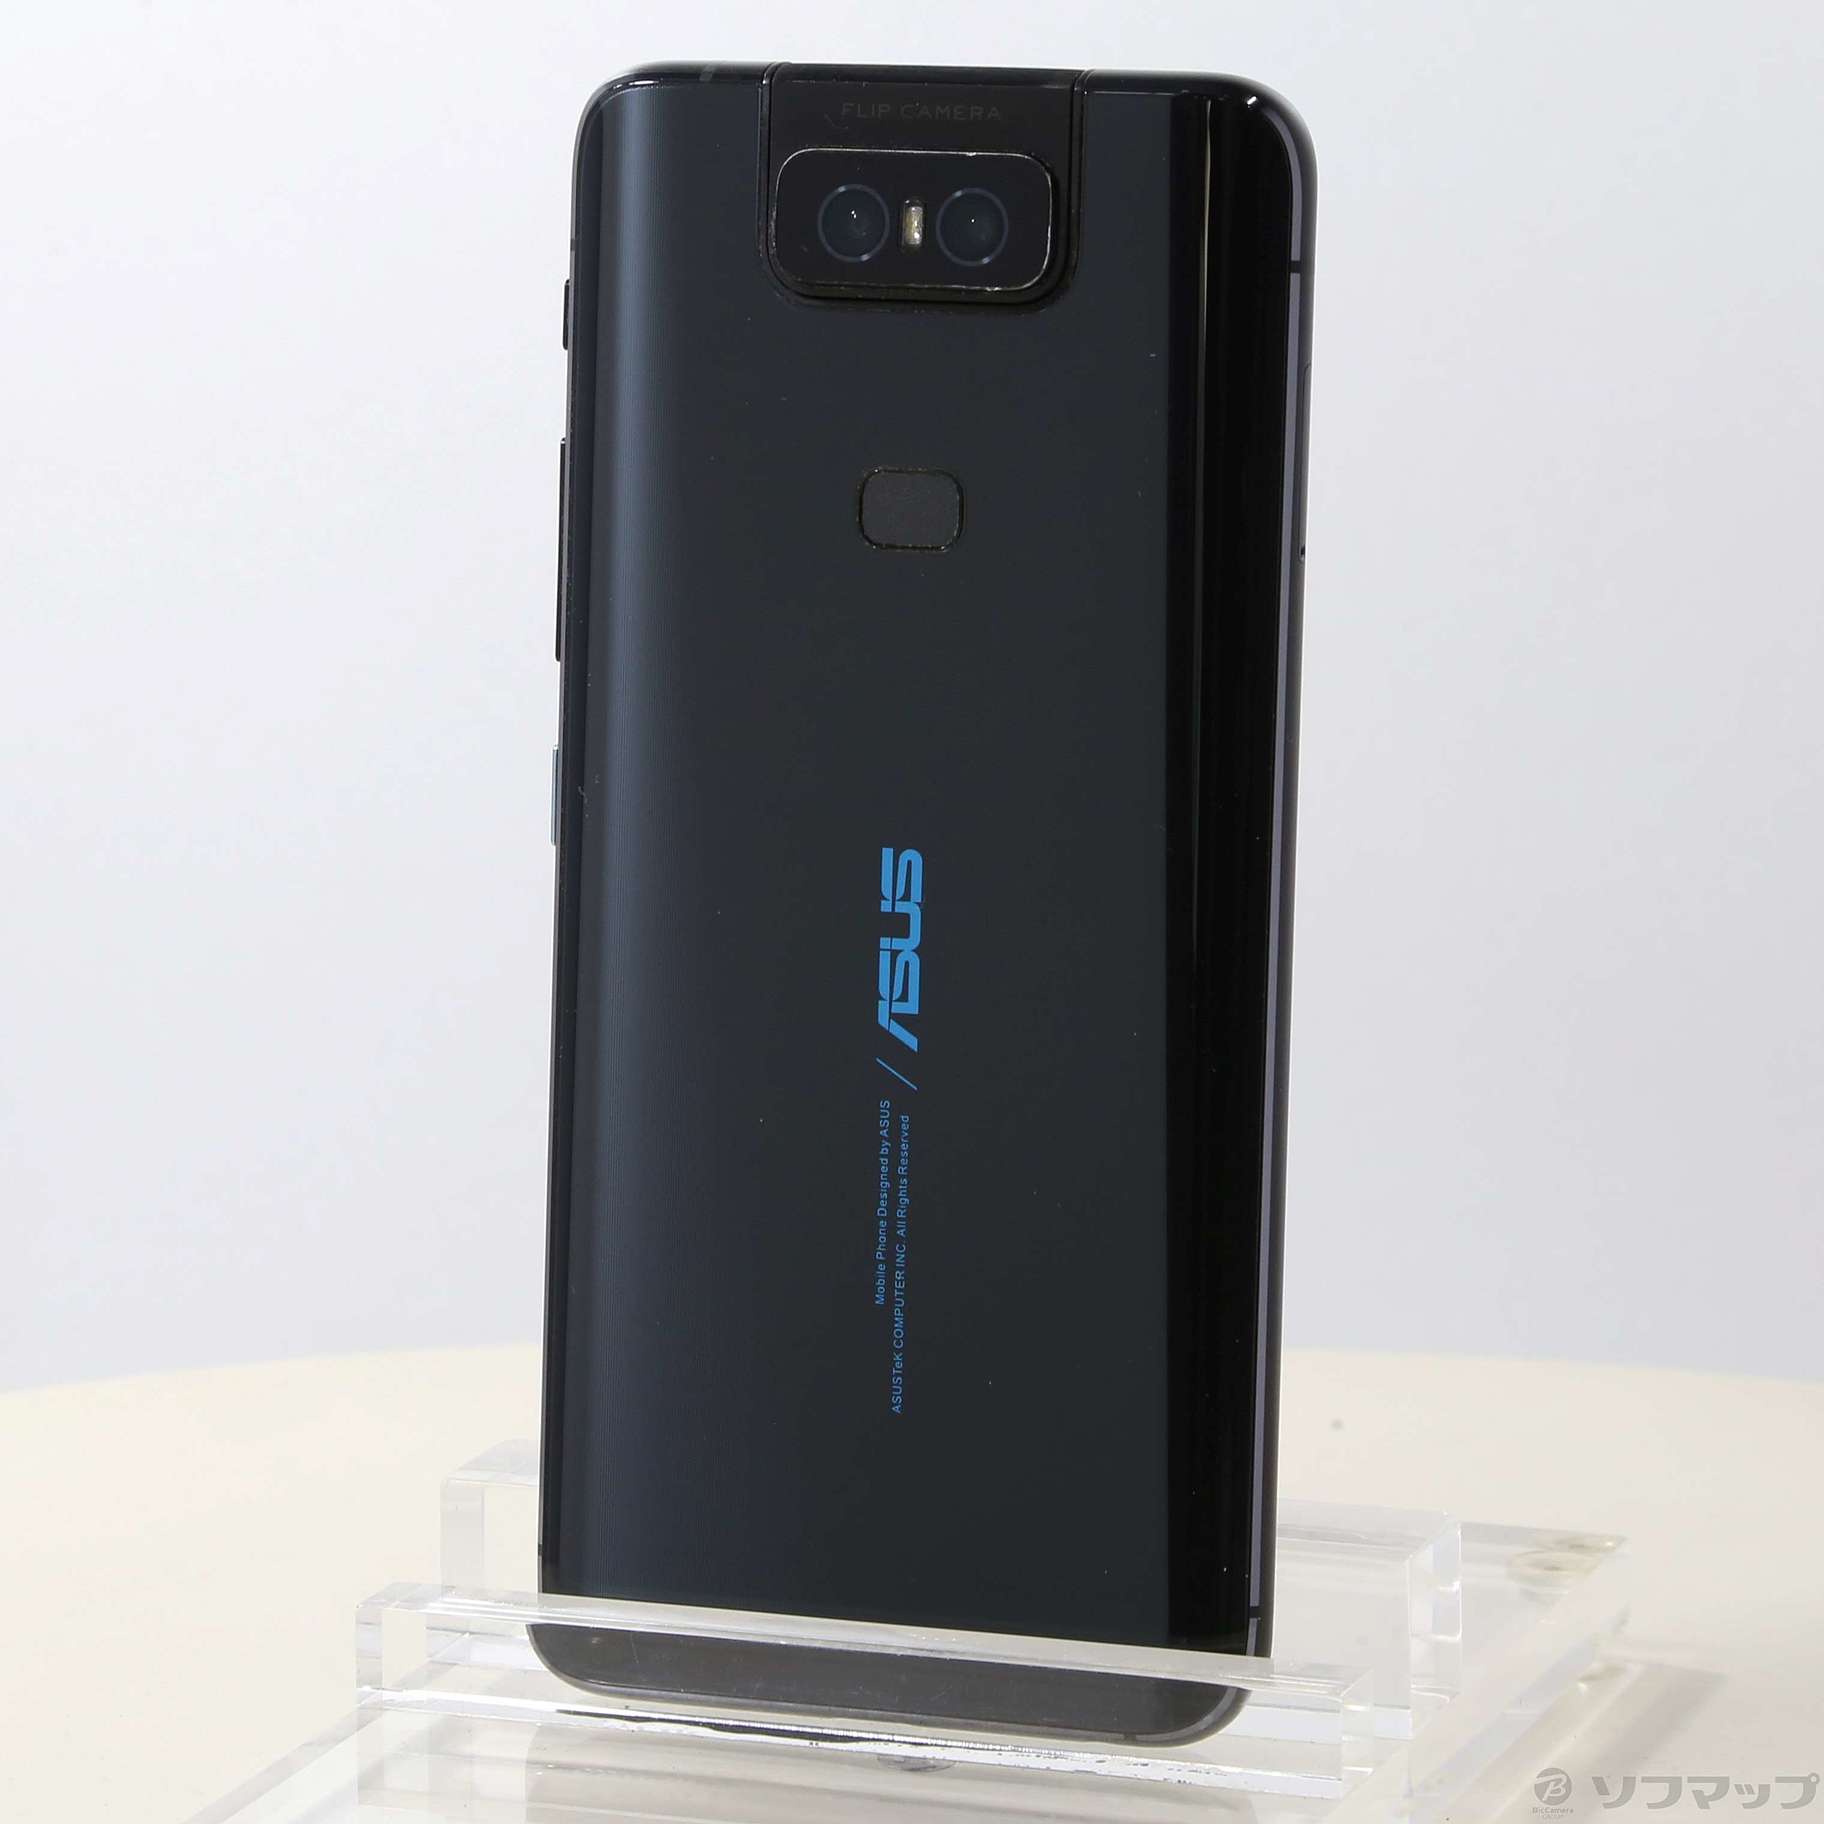 中古】ZenFone 6 128GB ミッドナイトブラック ZS630KL-BK128S6 SIM